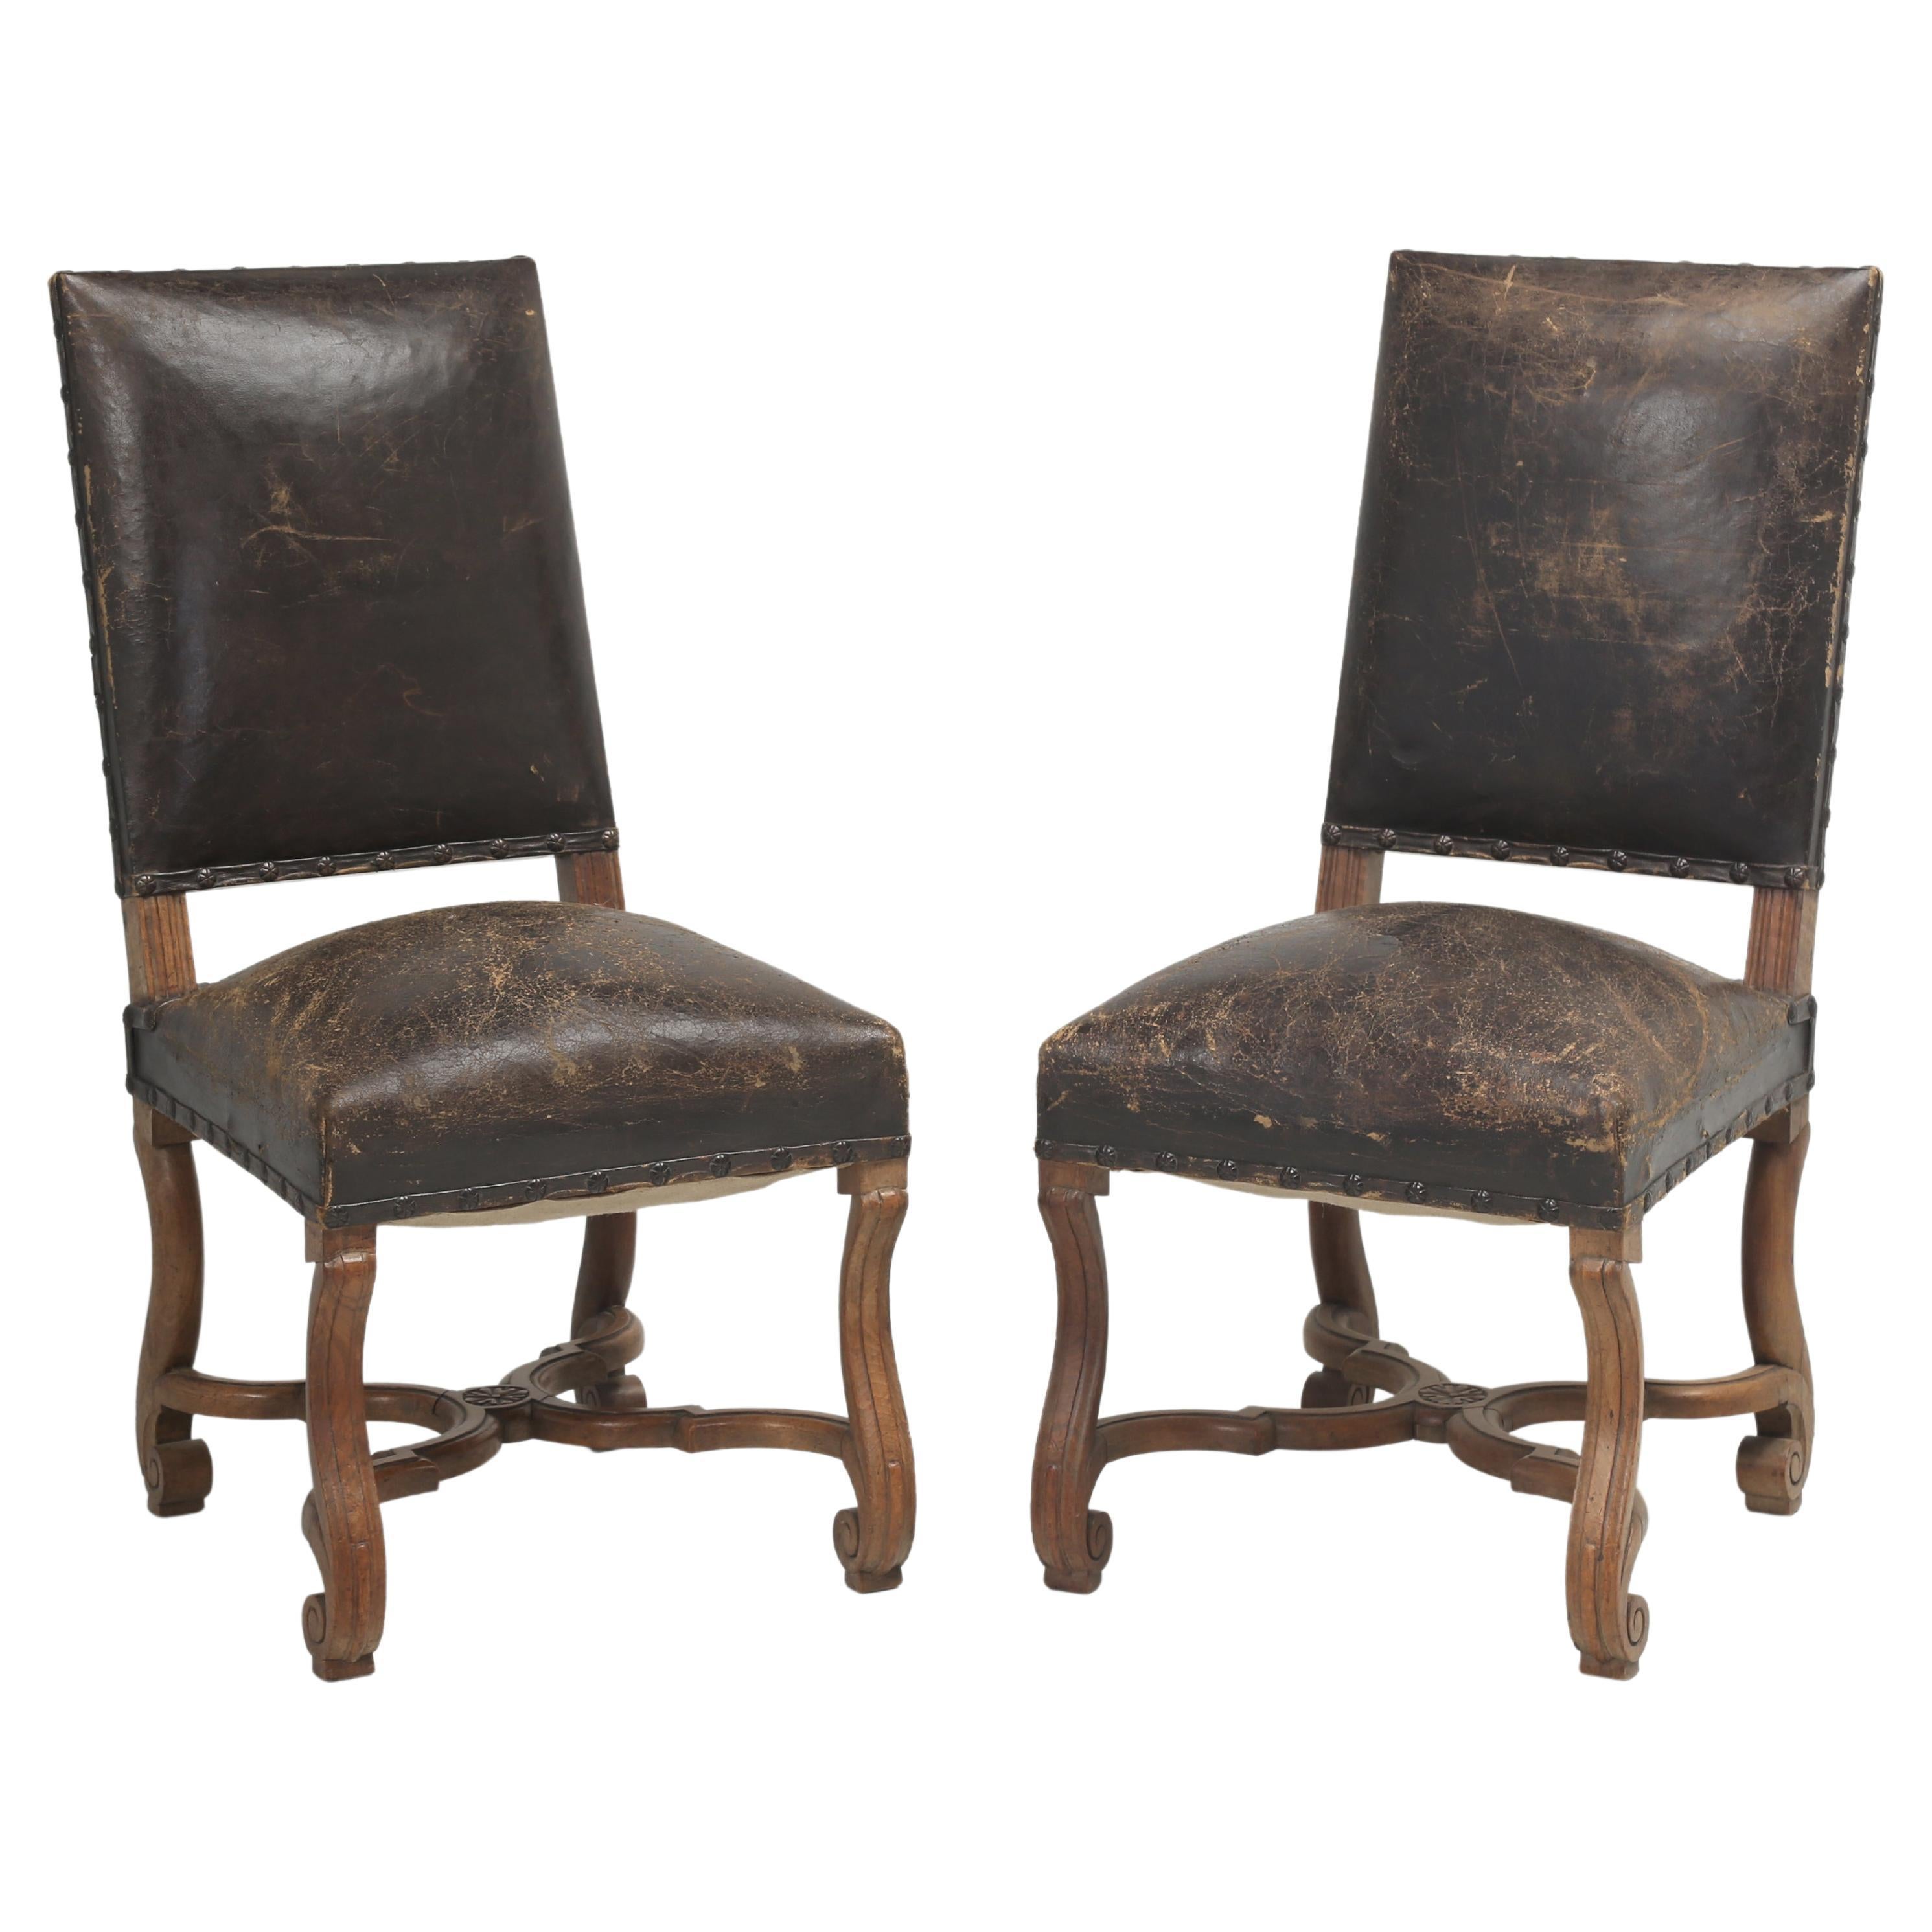 Paire de chaises d'appoint anciennes en cuir ancien, probablement italiennes, début des années 1900, non restaurées